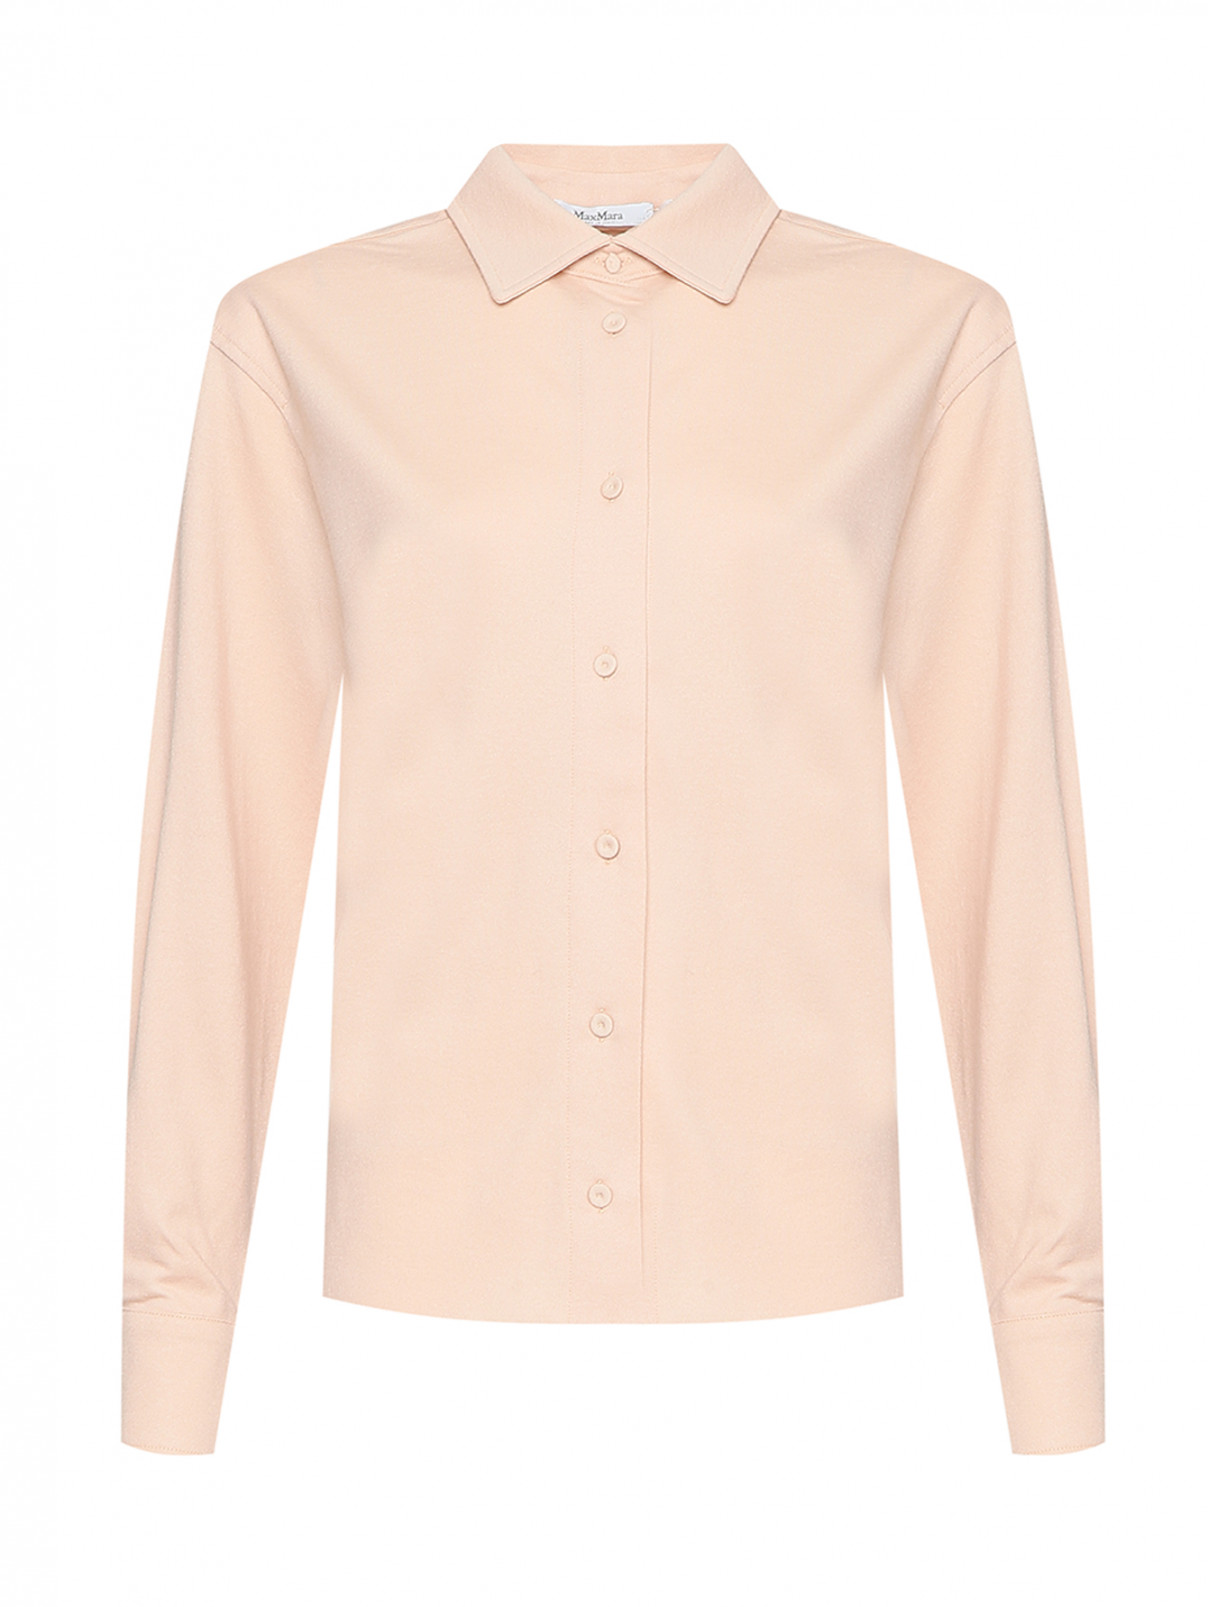 Трикотажная рубашка свободного кроя Max Mara  –  Общий вид  – Цвет:  Розовый